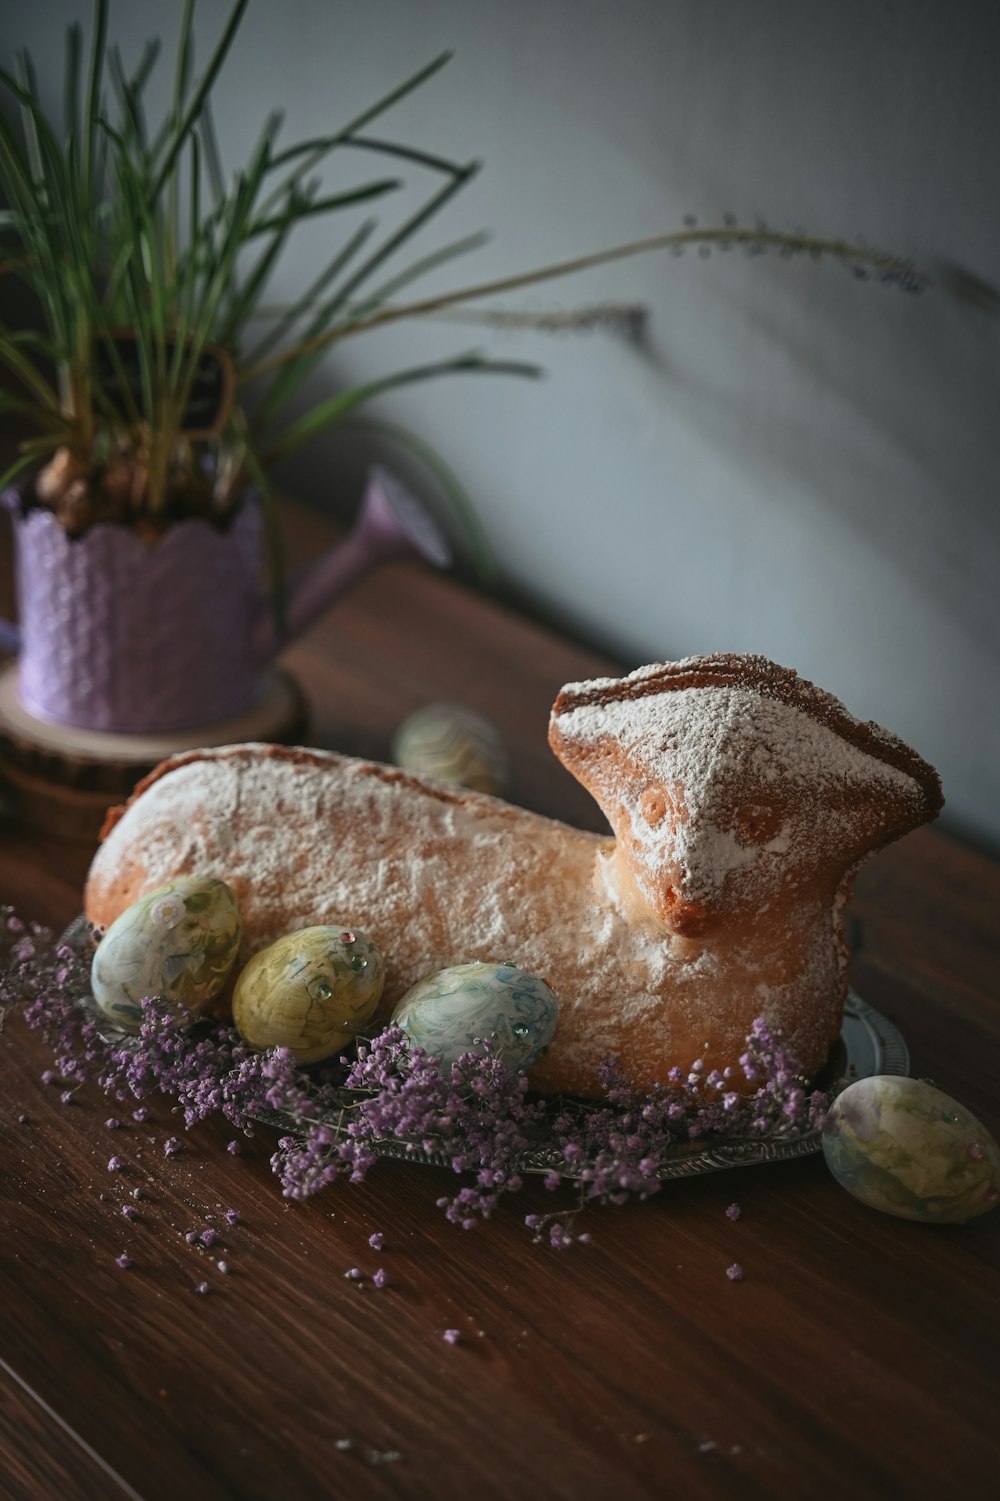 나무 탁자 위에 놓인 빵 한 덩어리